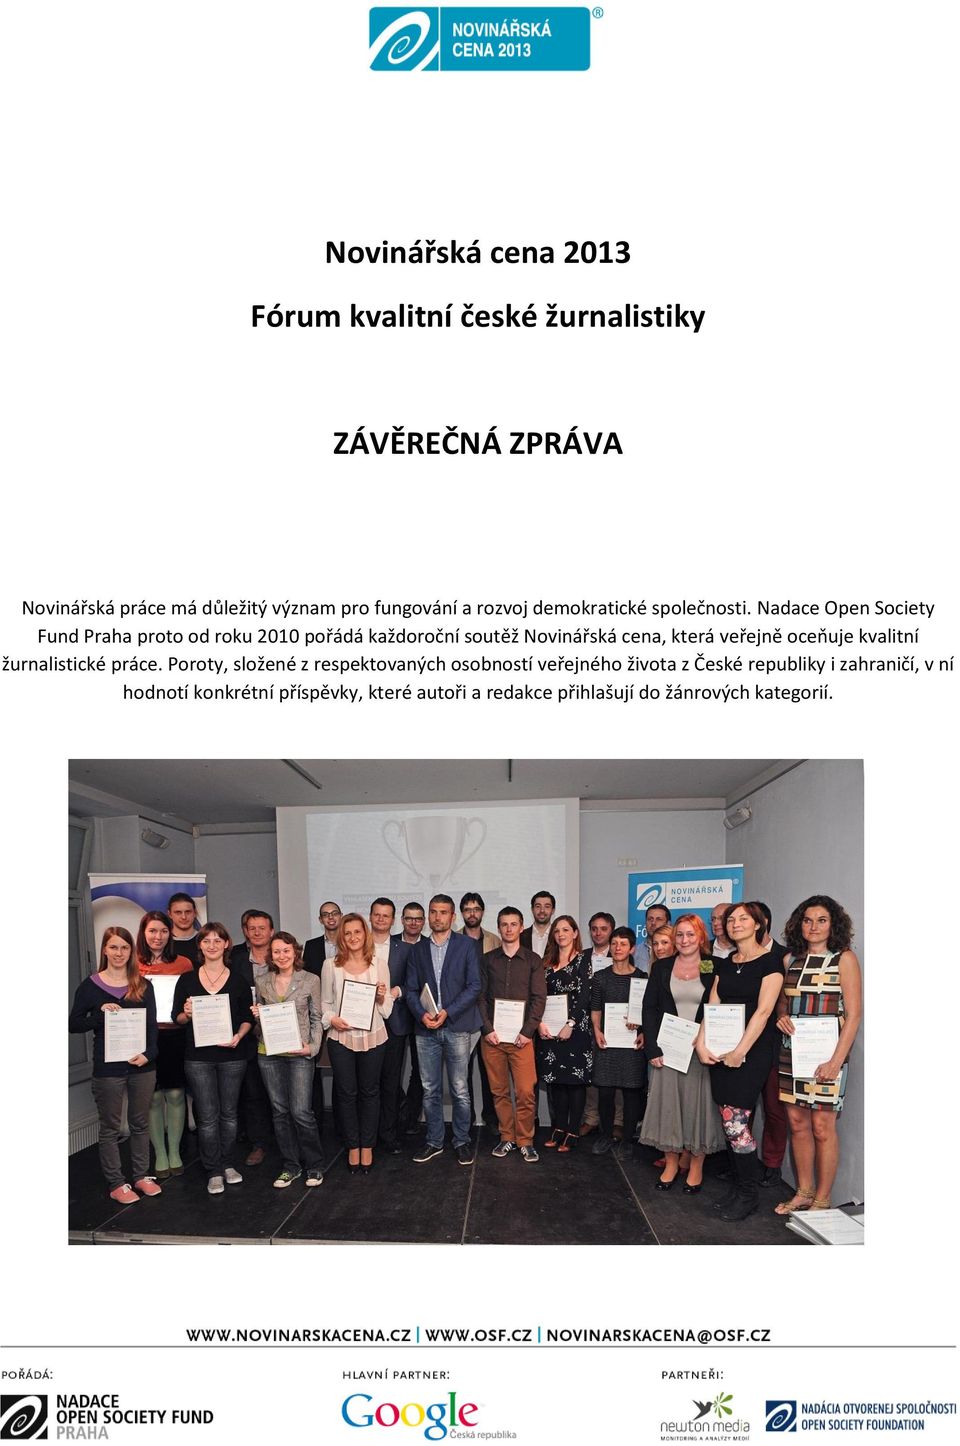 Nadace Open Society Fund Praha proto od roku 2010 pořádá každoroční soutěž Novinářská cena, která veřejně oceňuje